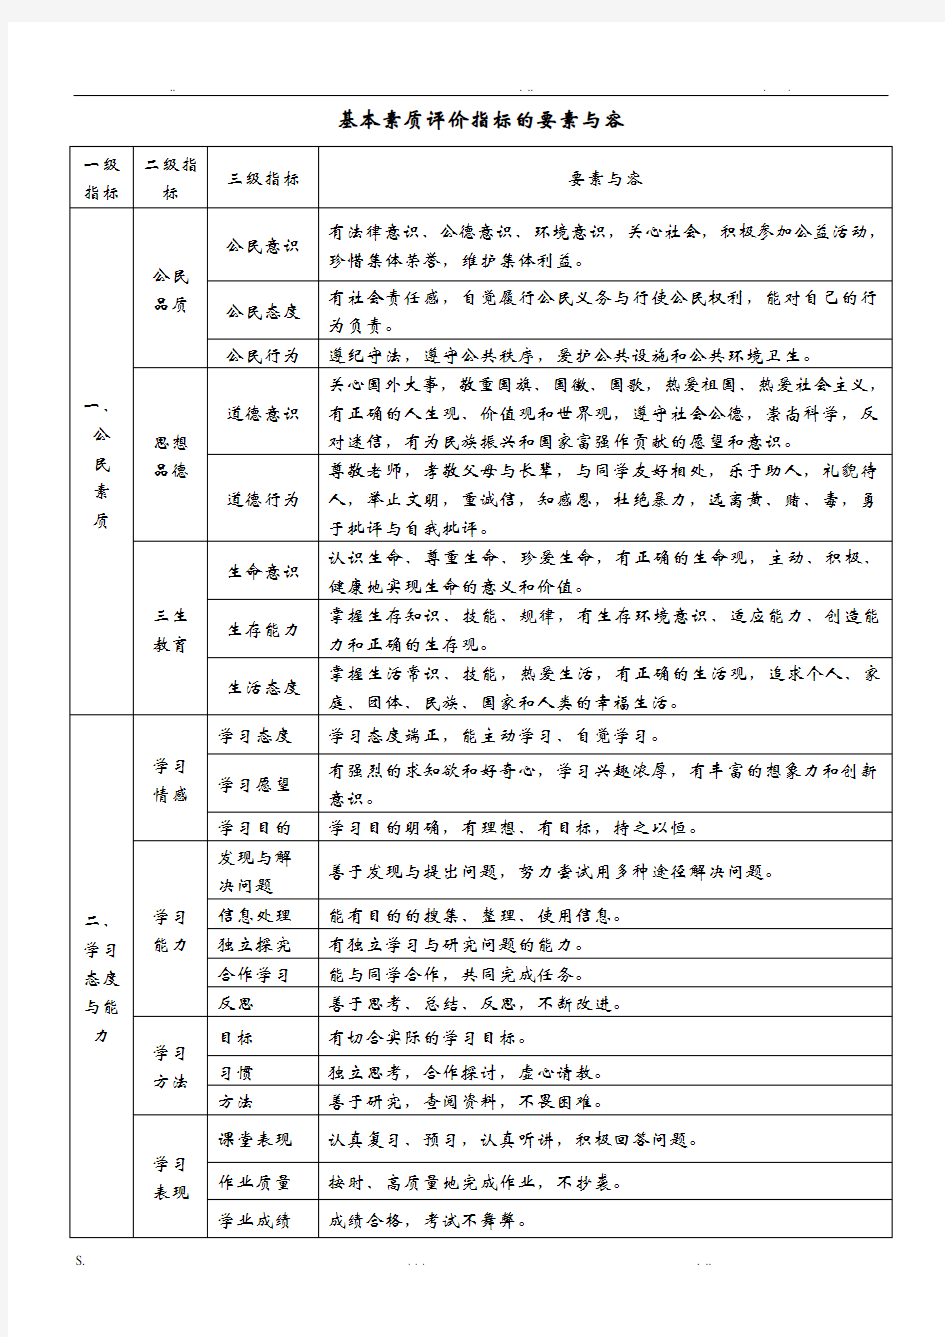 云南省普通高中学生成长记录手册填写样式